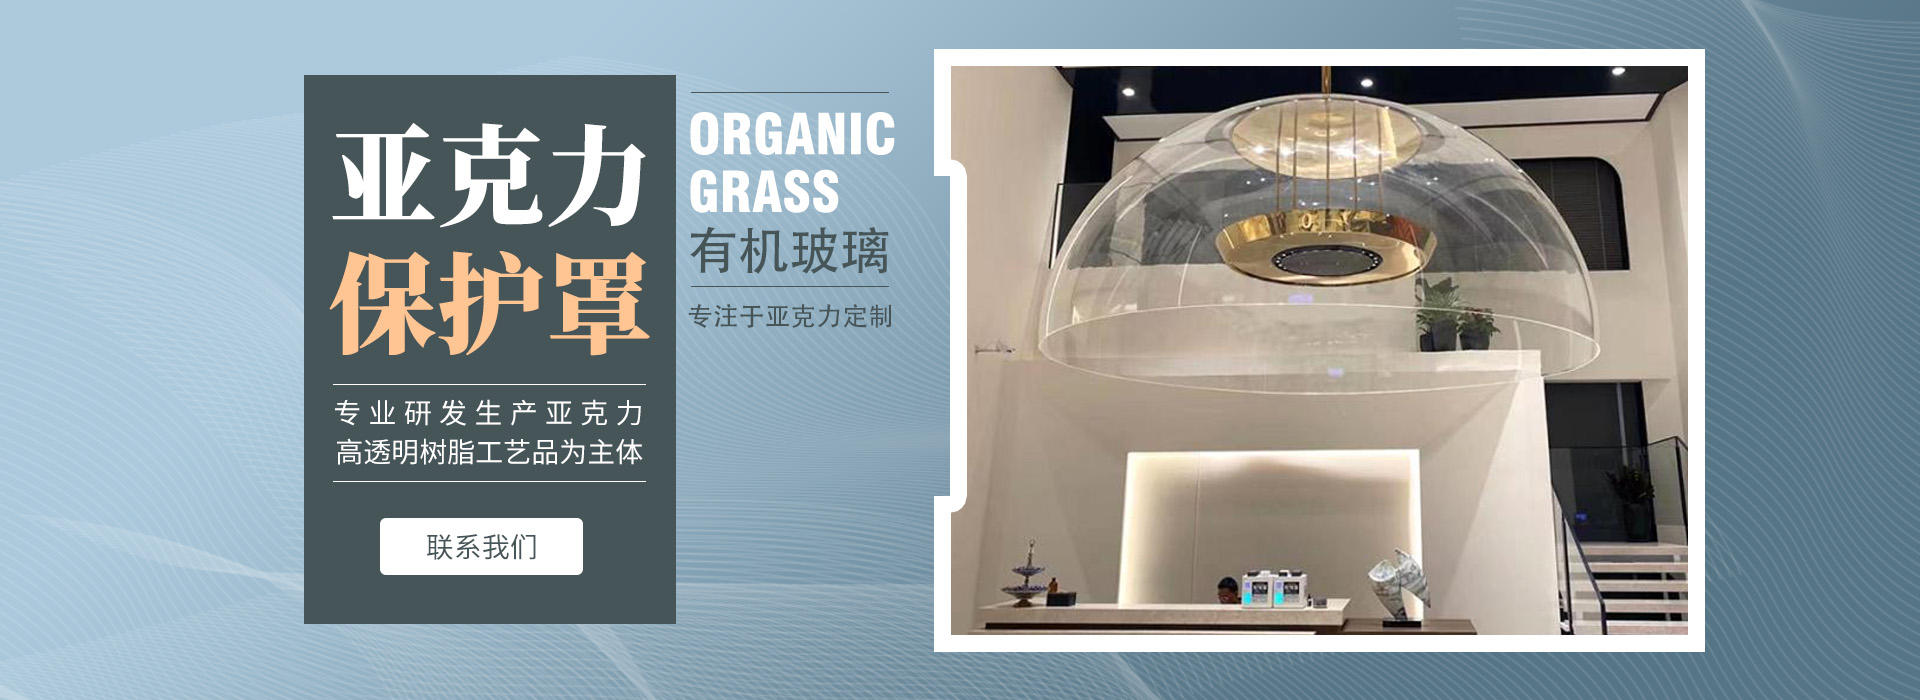 亚克力球、亚克力隧道、炫彩亚克力-东莞市精美有机玻璃制品有限公司